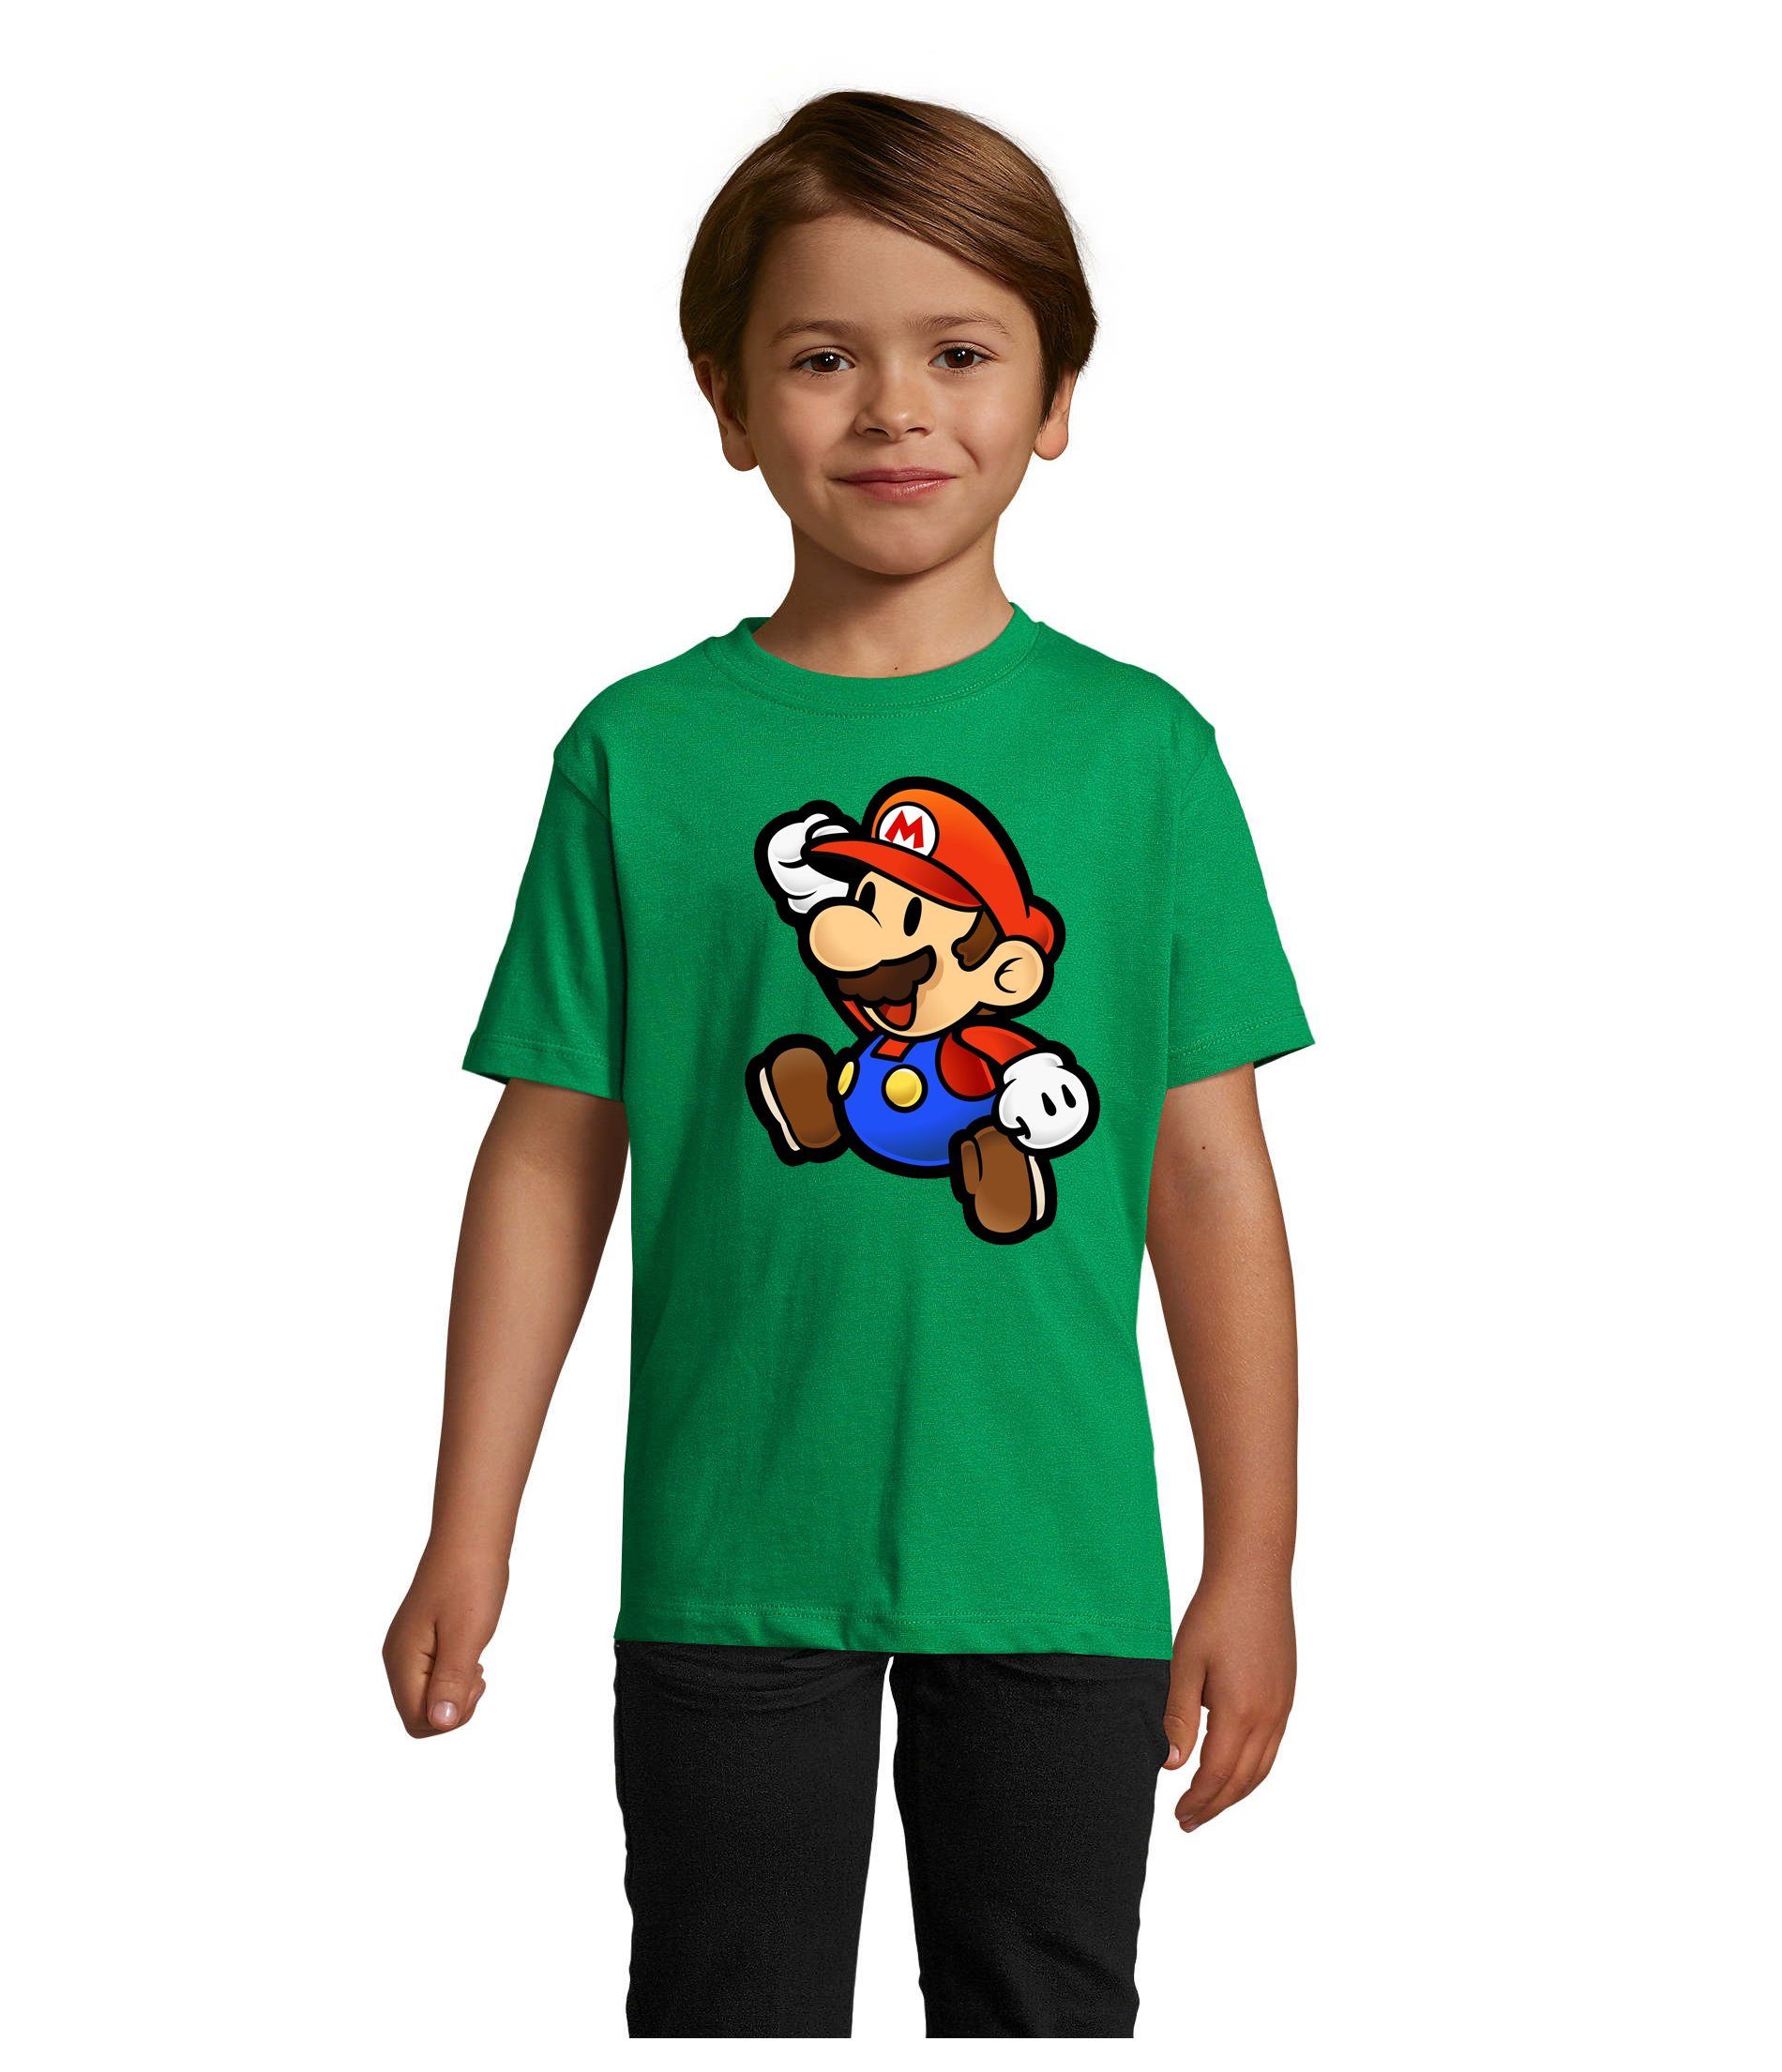 Blondie & Brownie T-Shirt Kinder Jungen & Mädchen Mario Nintendo Gaming Luigi Yoshi Super in vielen Farben Grün